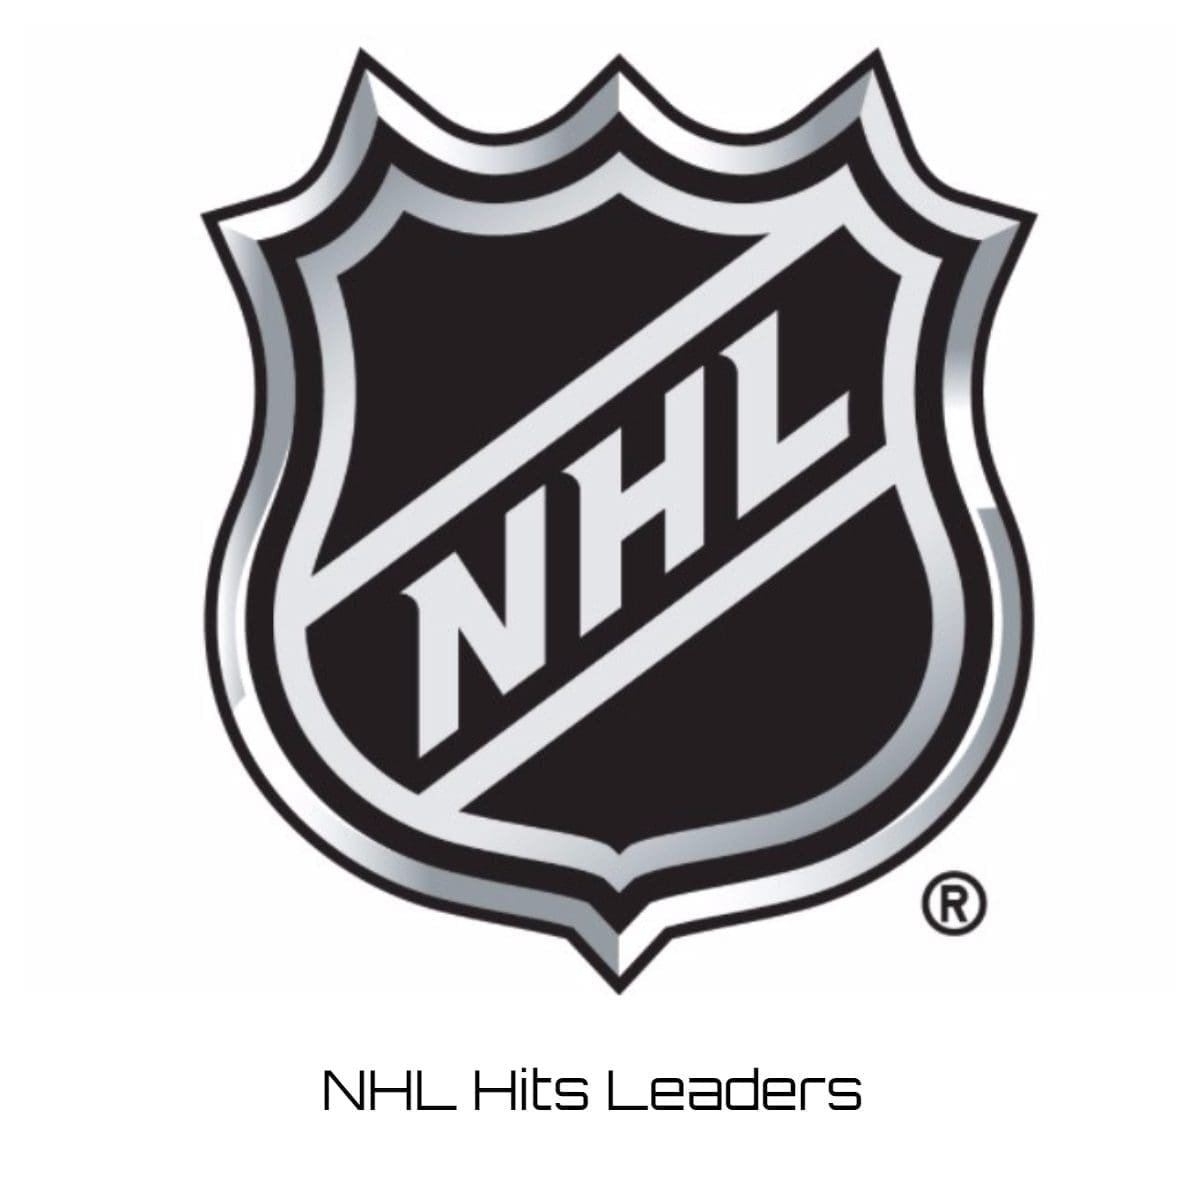 NHL Hits Leaders 202324? Player Rankings